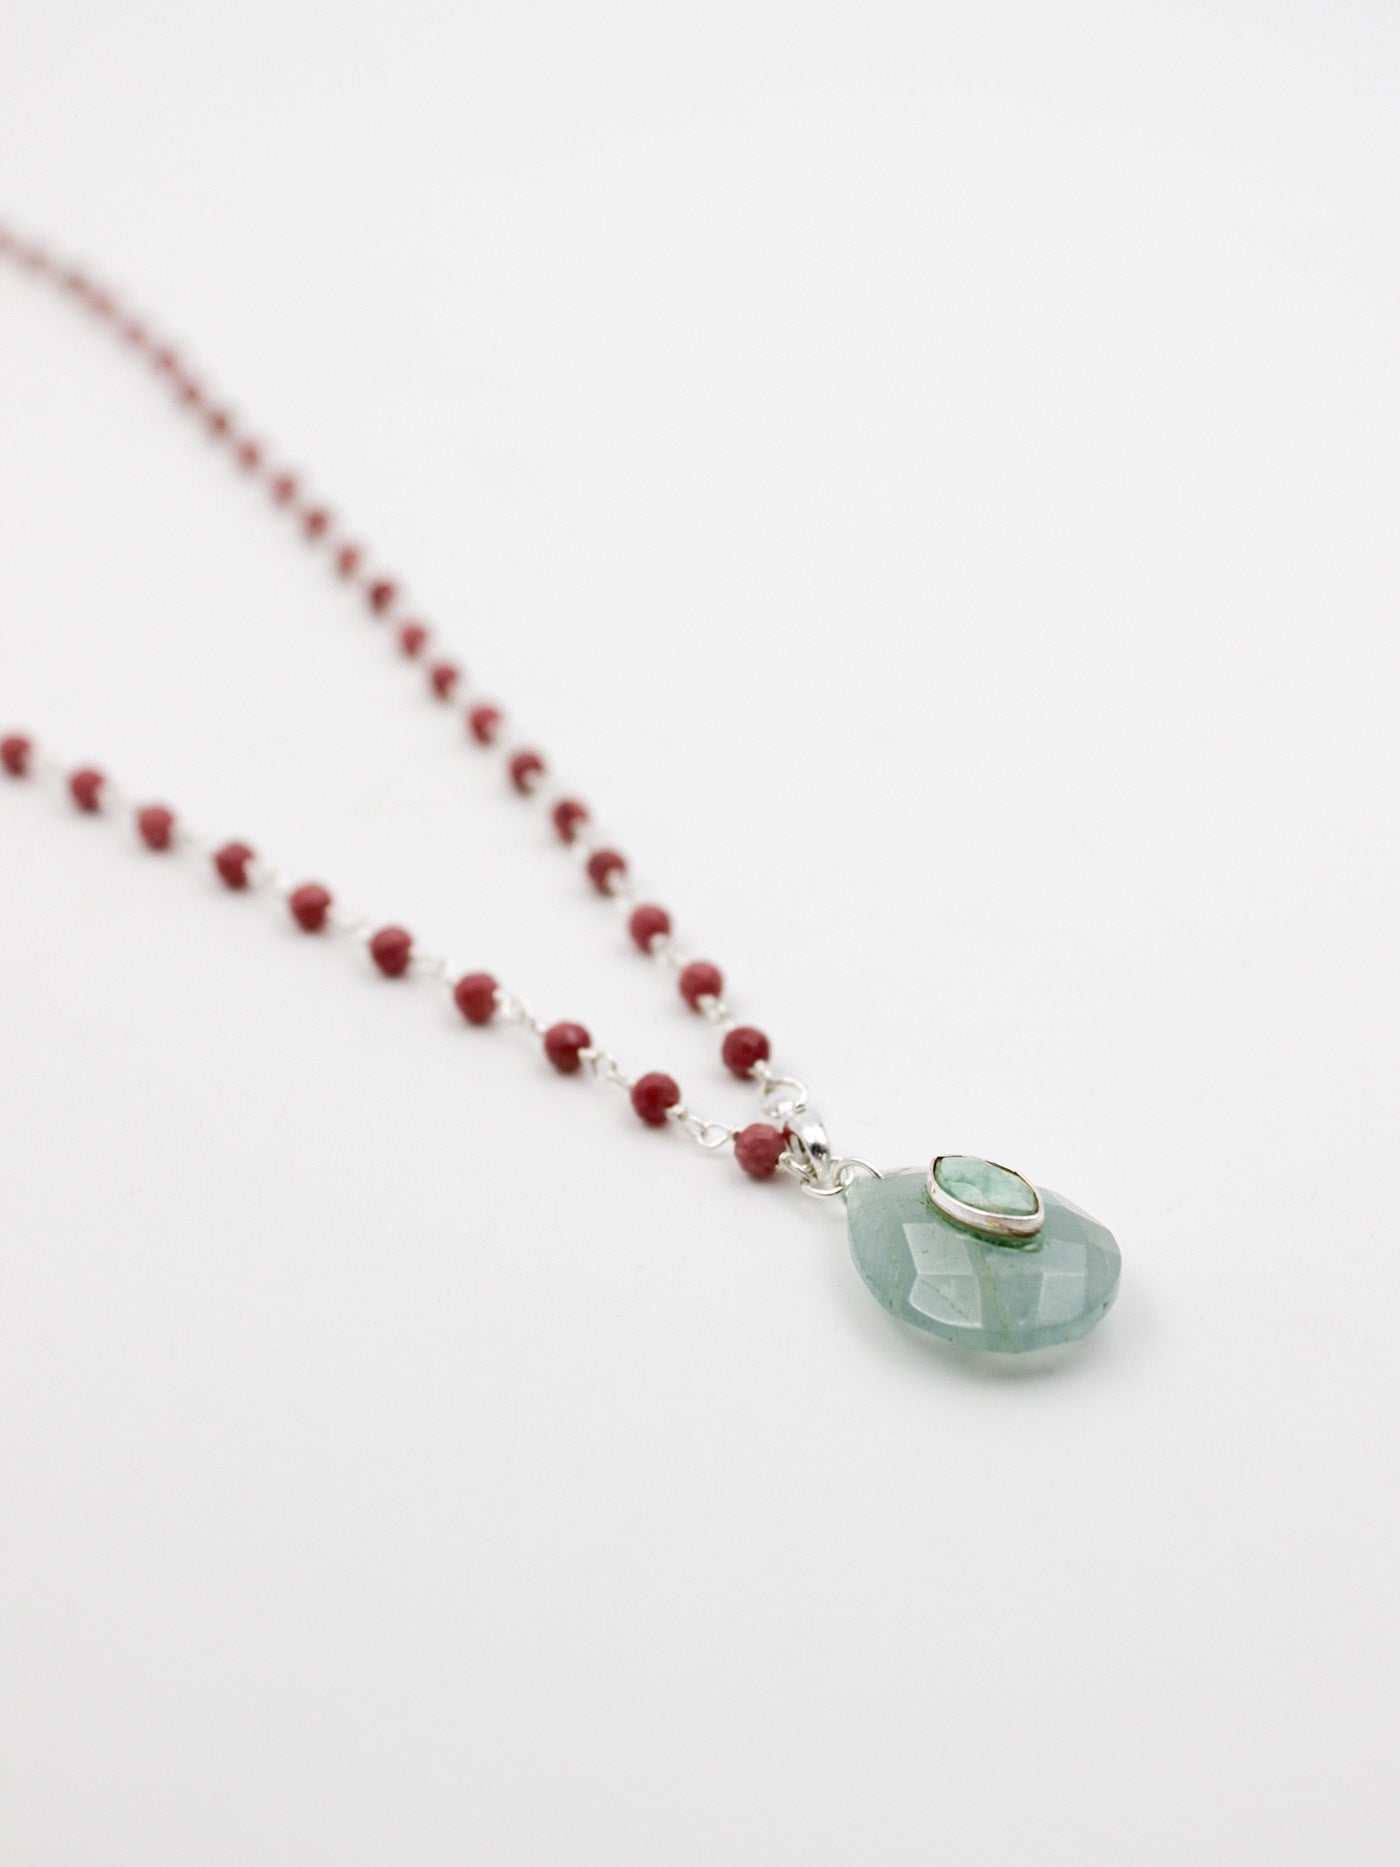 Collier perles et goutte - gamme LOUISE - argent 925 - pierres naturelles : rhodonite, aigue marine, amazonite - nouvelle collection 23FW - l’Atelier des Dames